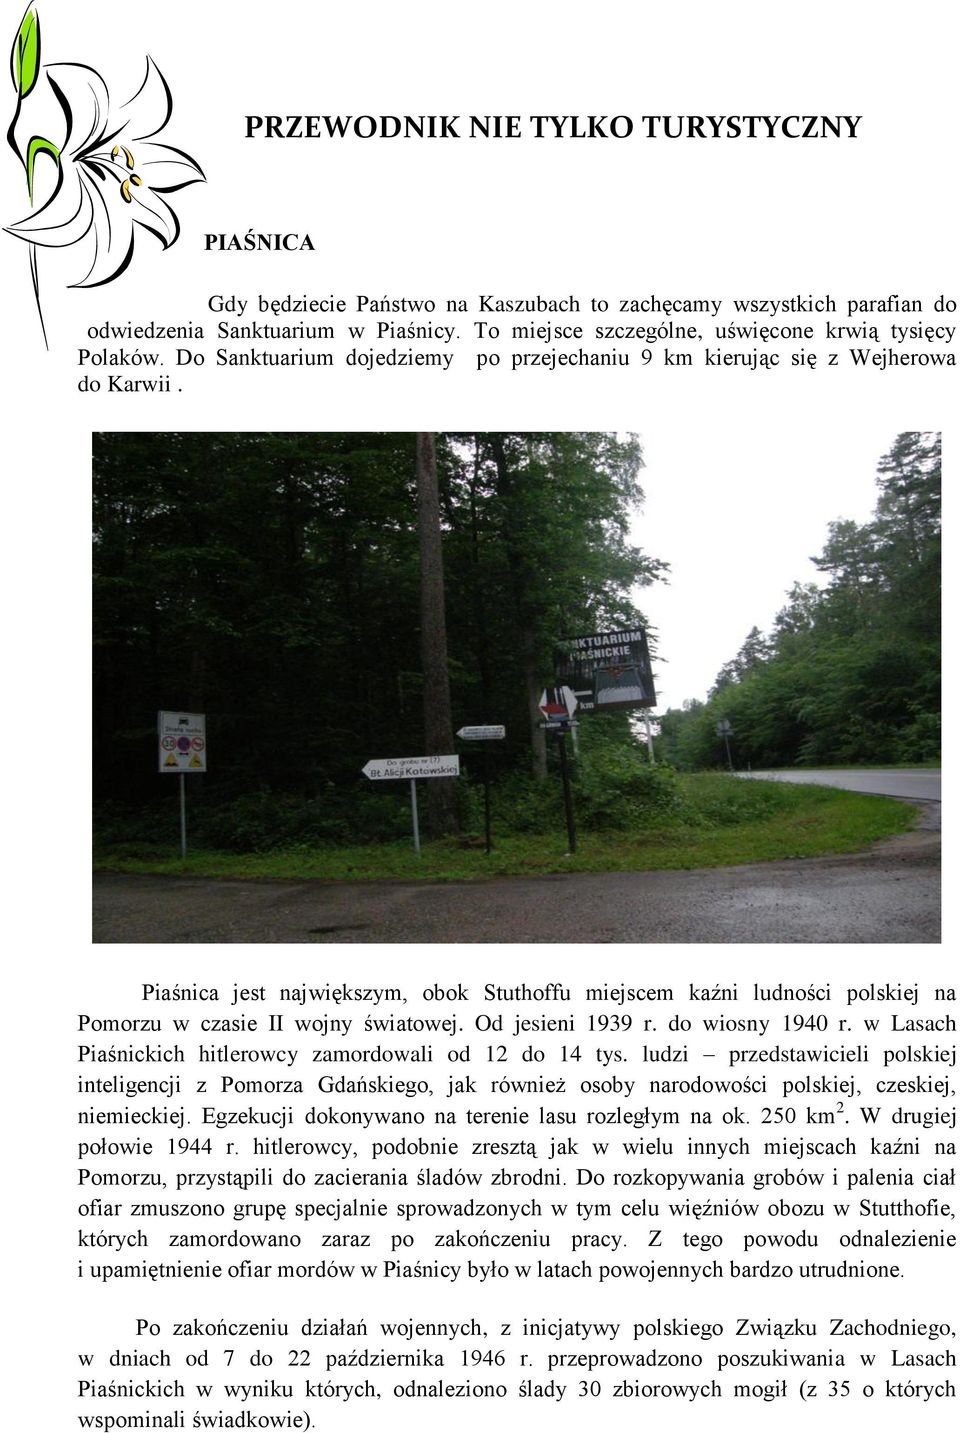 Piaśnica jest największym, obok Stuthoffu miejscem kaźni ludności polskiej na Pomorzu w czasie II wojny światowej. Od jesieni 1939 r. do wiosny 1940 r.